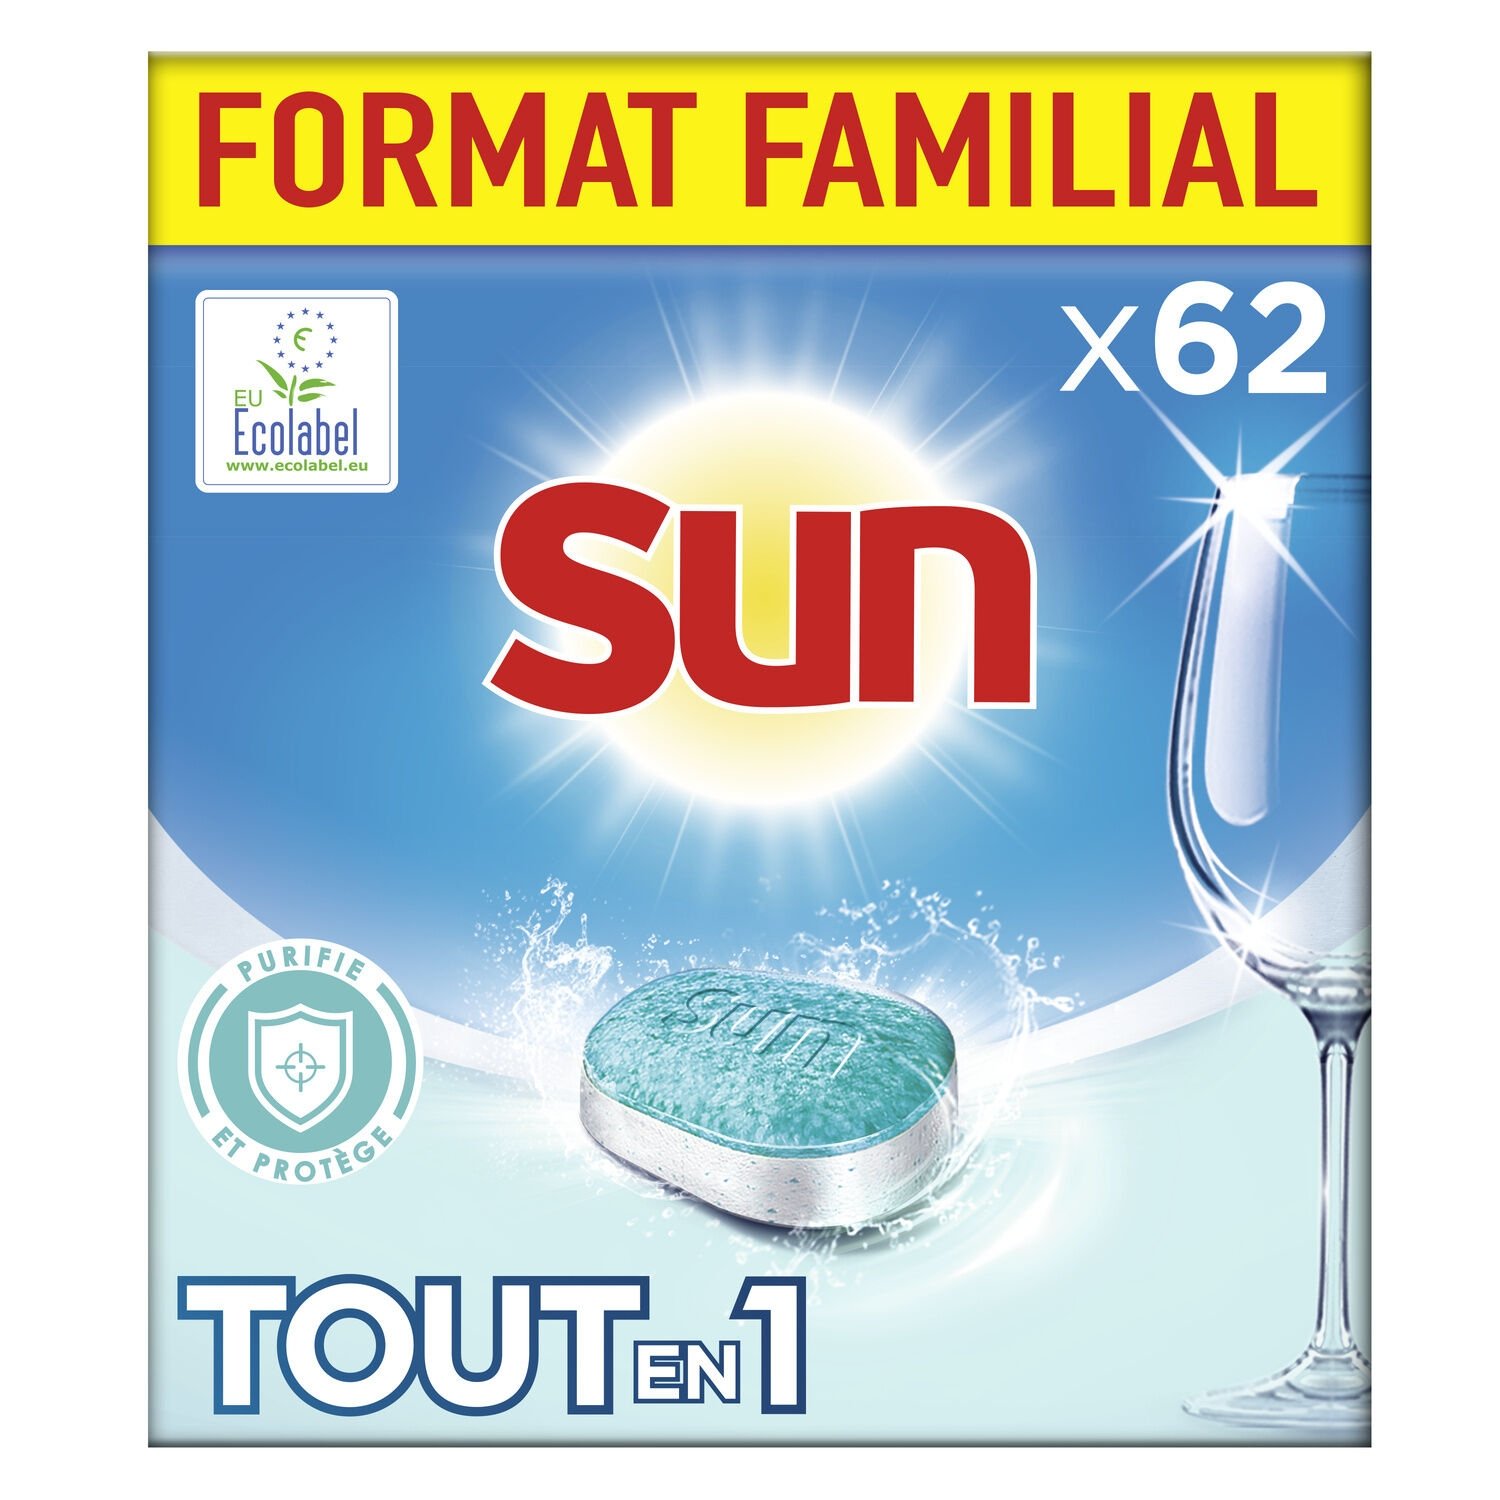 Sun Tablettes LaveVaisselle Tout En 1 62 Lavages Format Familial